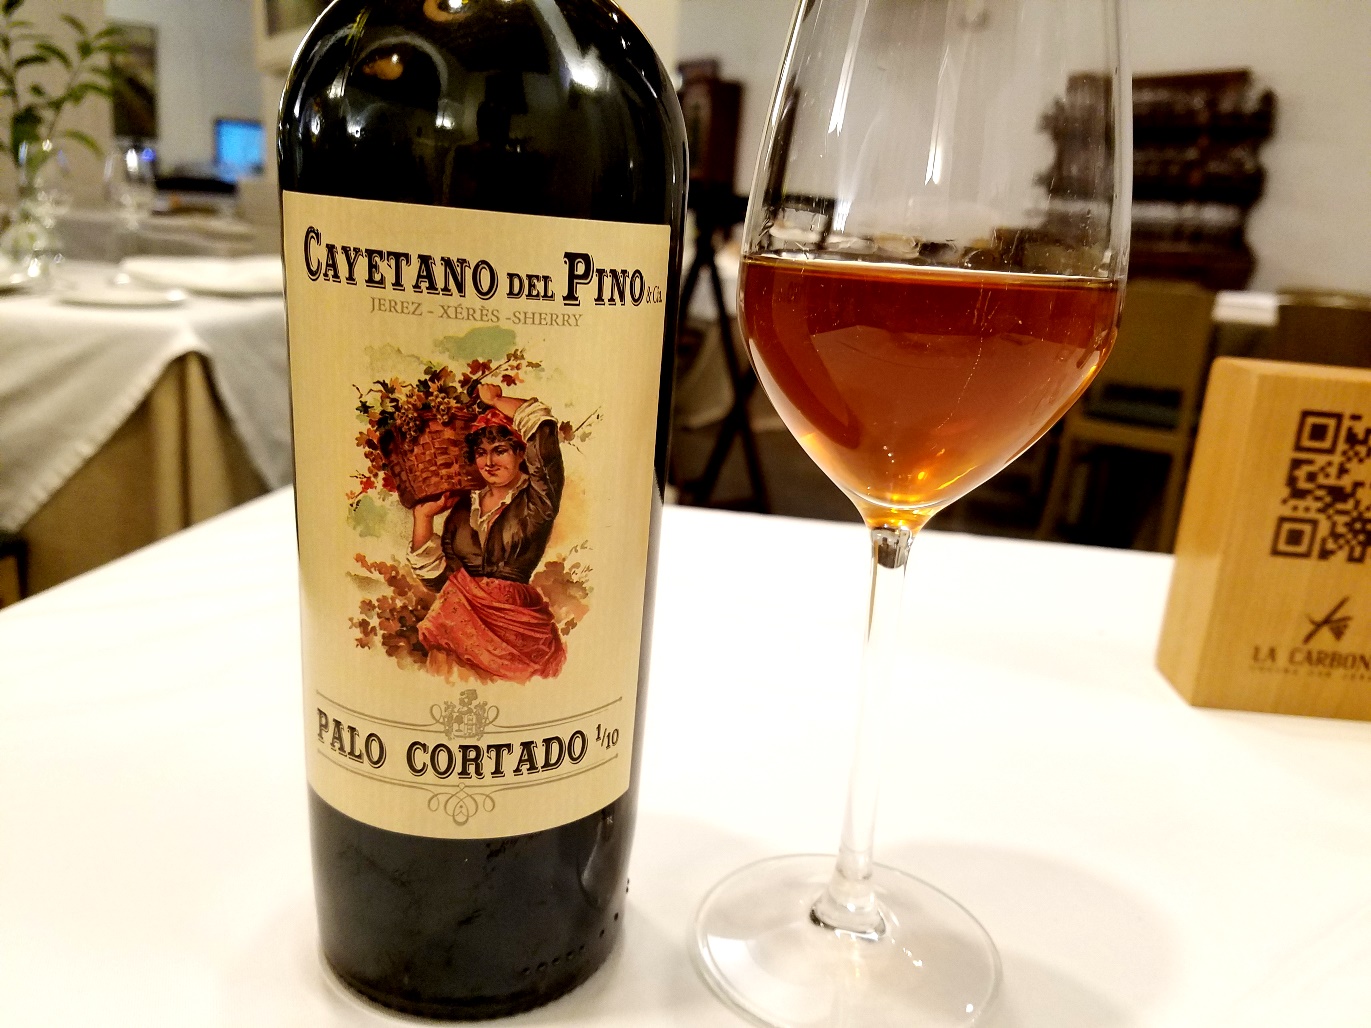 Cayetano del Pino, Palo Cortado 1/10 Sherry VOS, Andalucía, Spain, Wine Casual